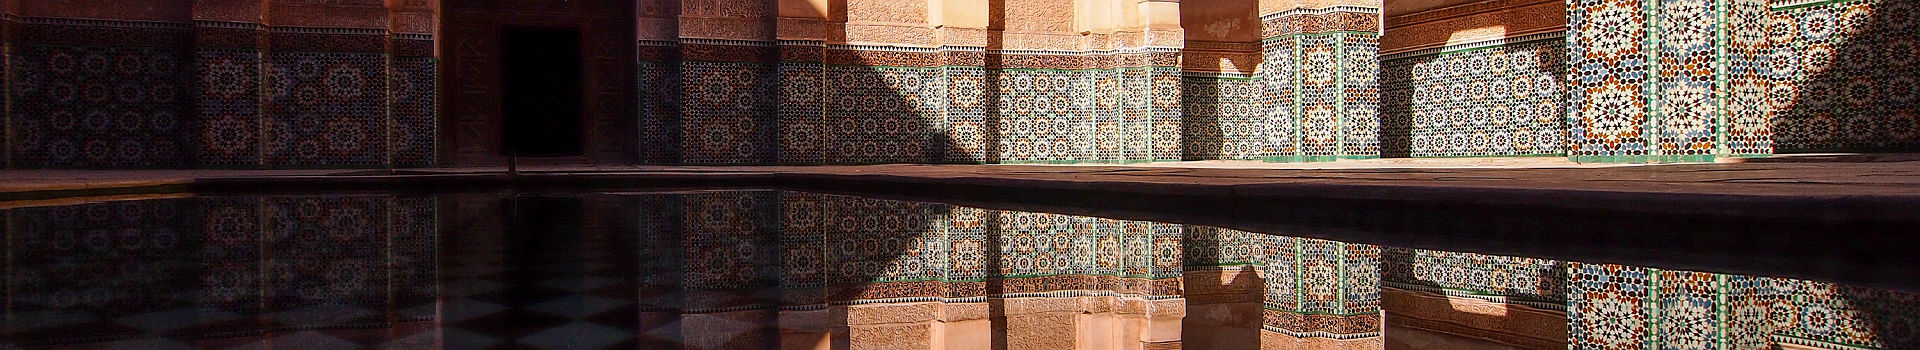 La médersa Ben Youssef à Marrakech - Maroc